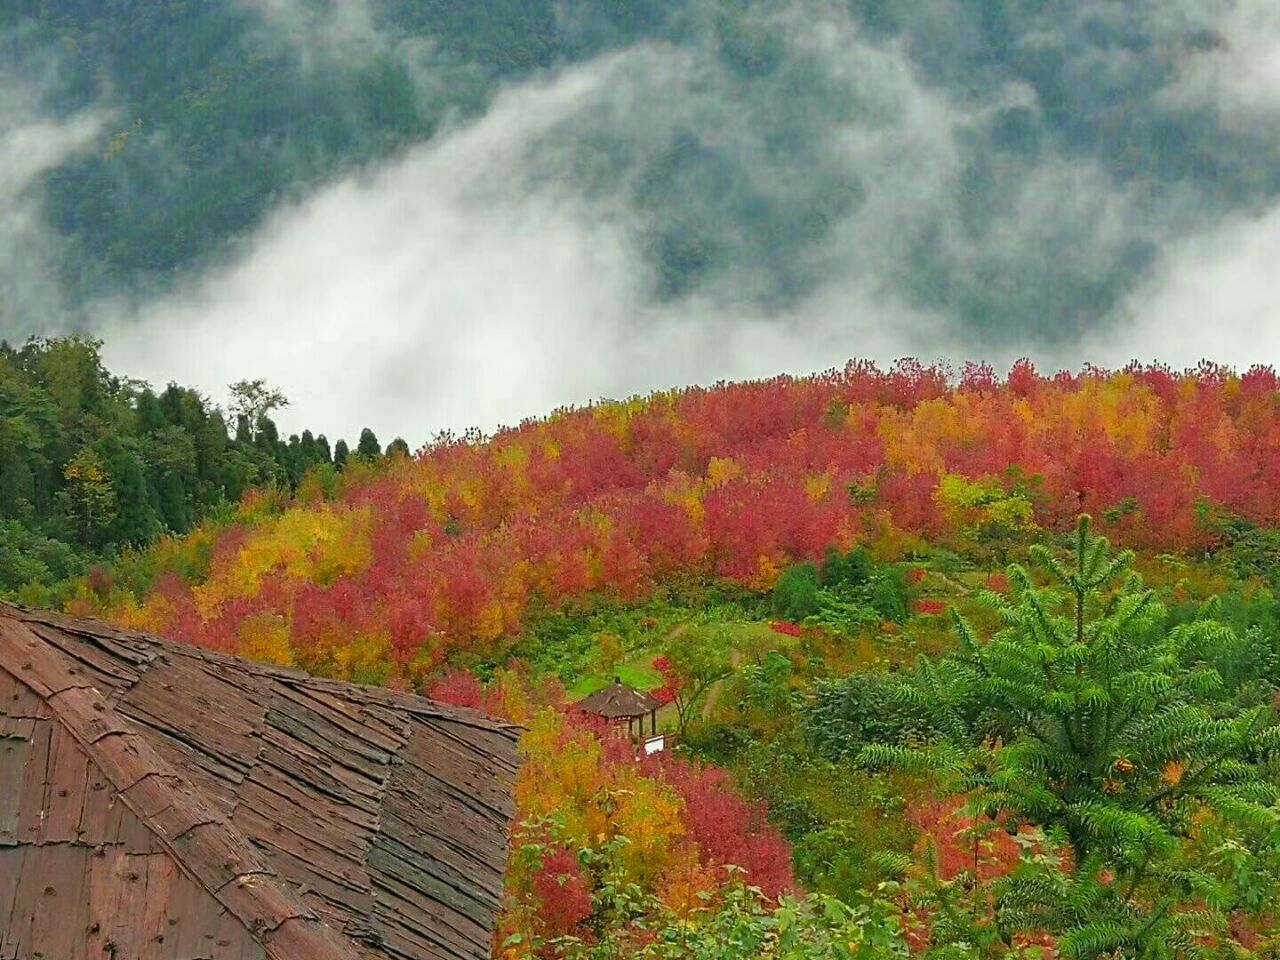 壁纸1280×1024壁纸 秋天红色的枫叶图片壁纸,浓浓秋色-秋天树叶摄影壁纸图片-风景壁纸-风景图片素材-桌面壁纸